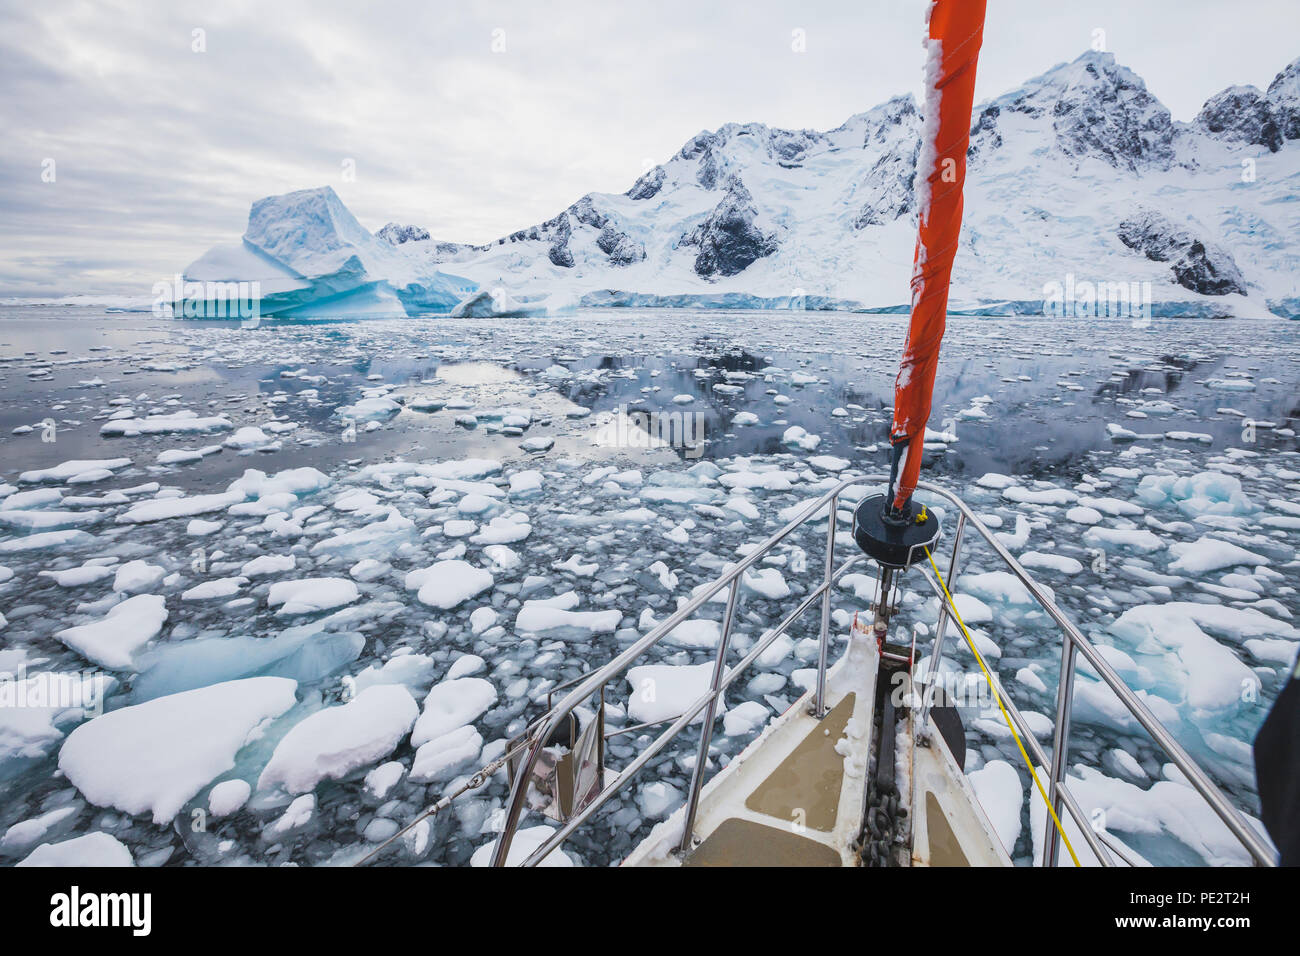 Bateau à voile en Antarctique, location de la navigation à travers les icebergs et de la glace de mer Banque D'Images